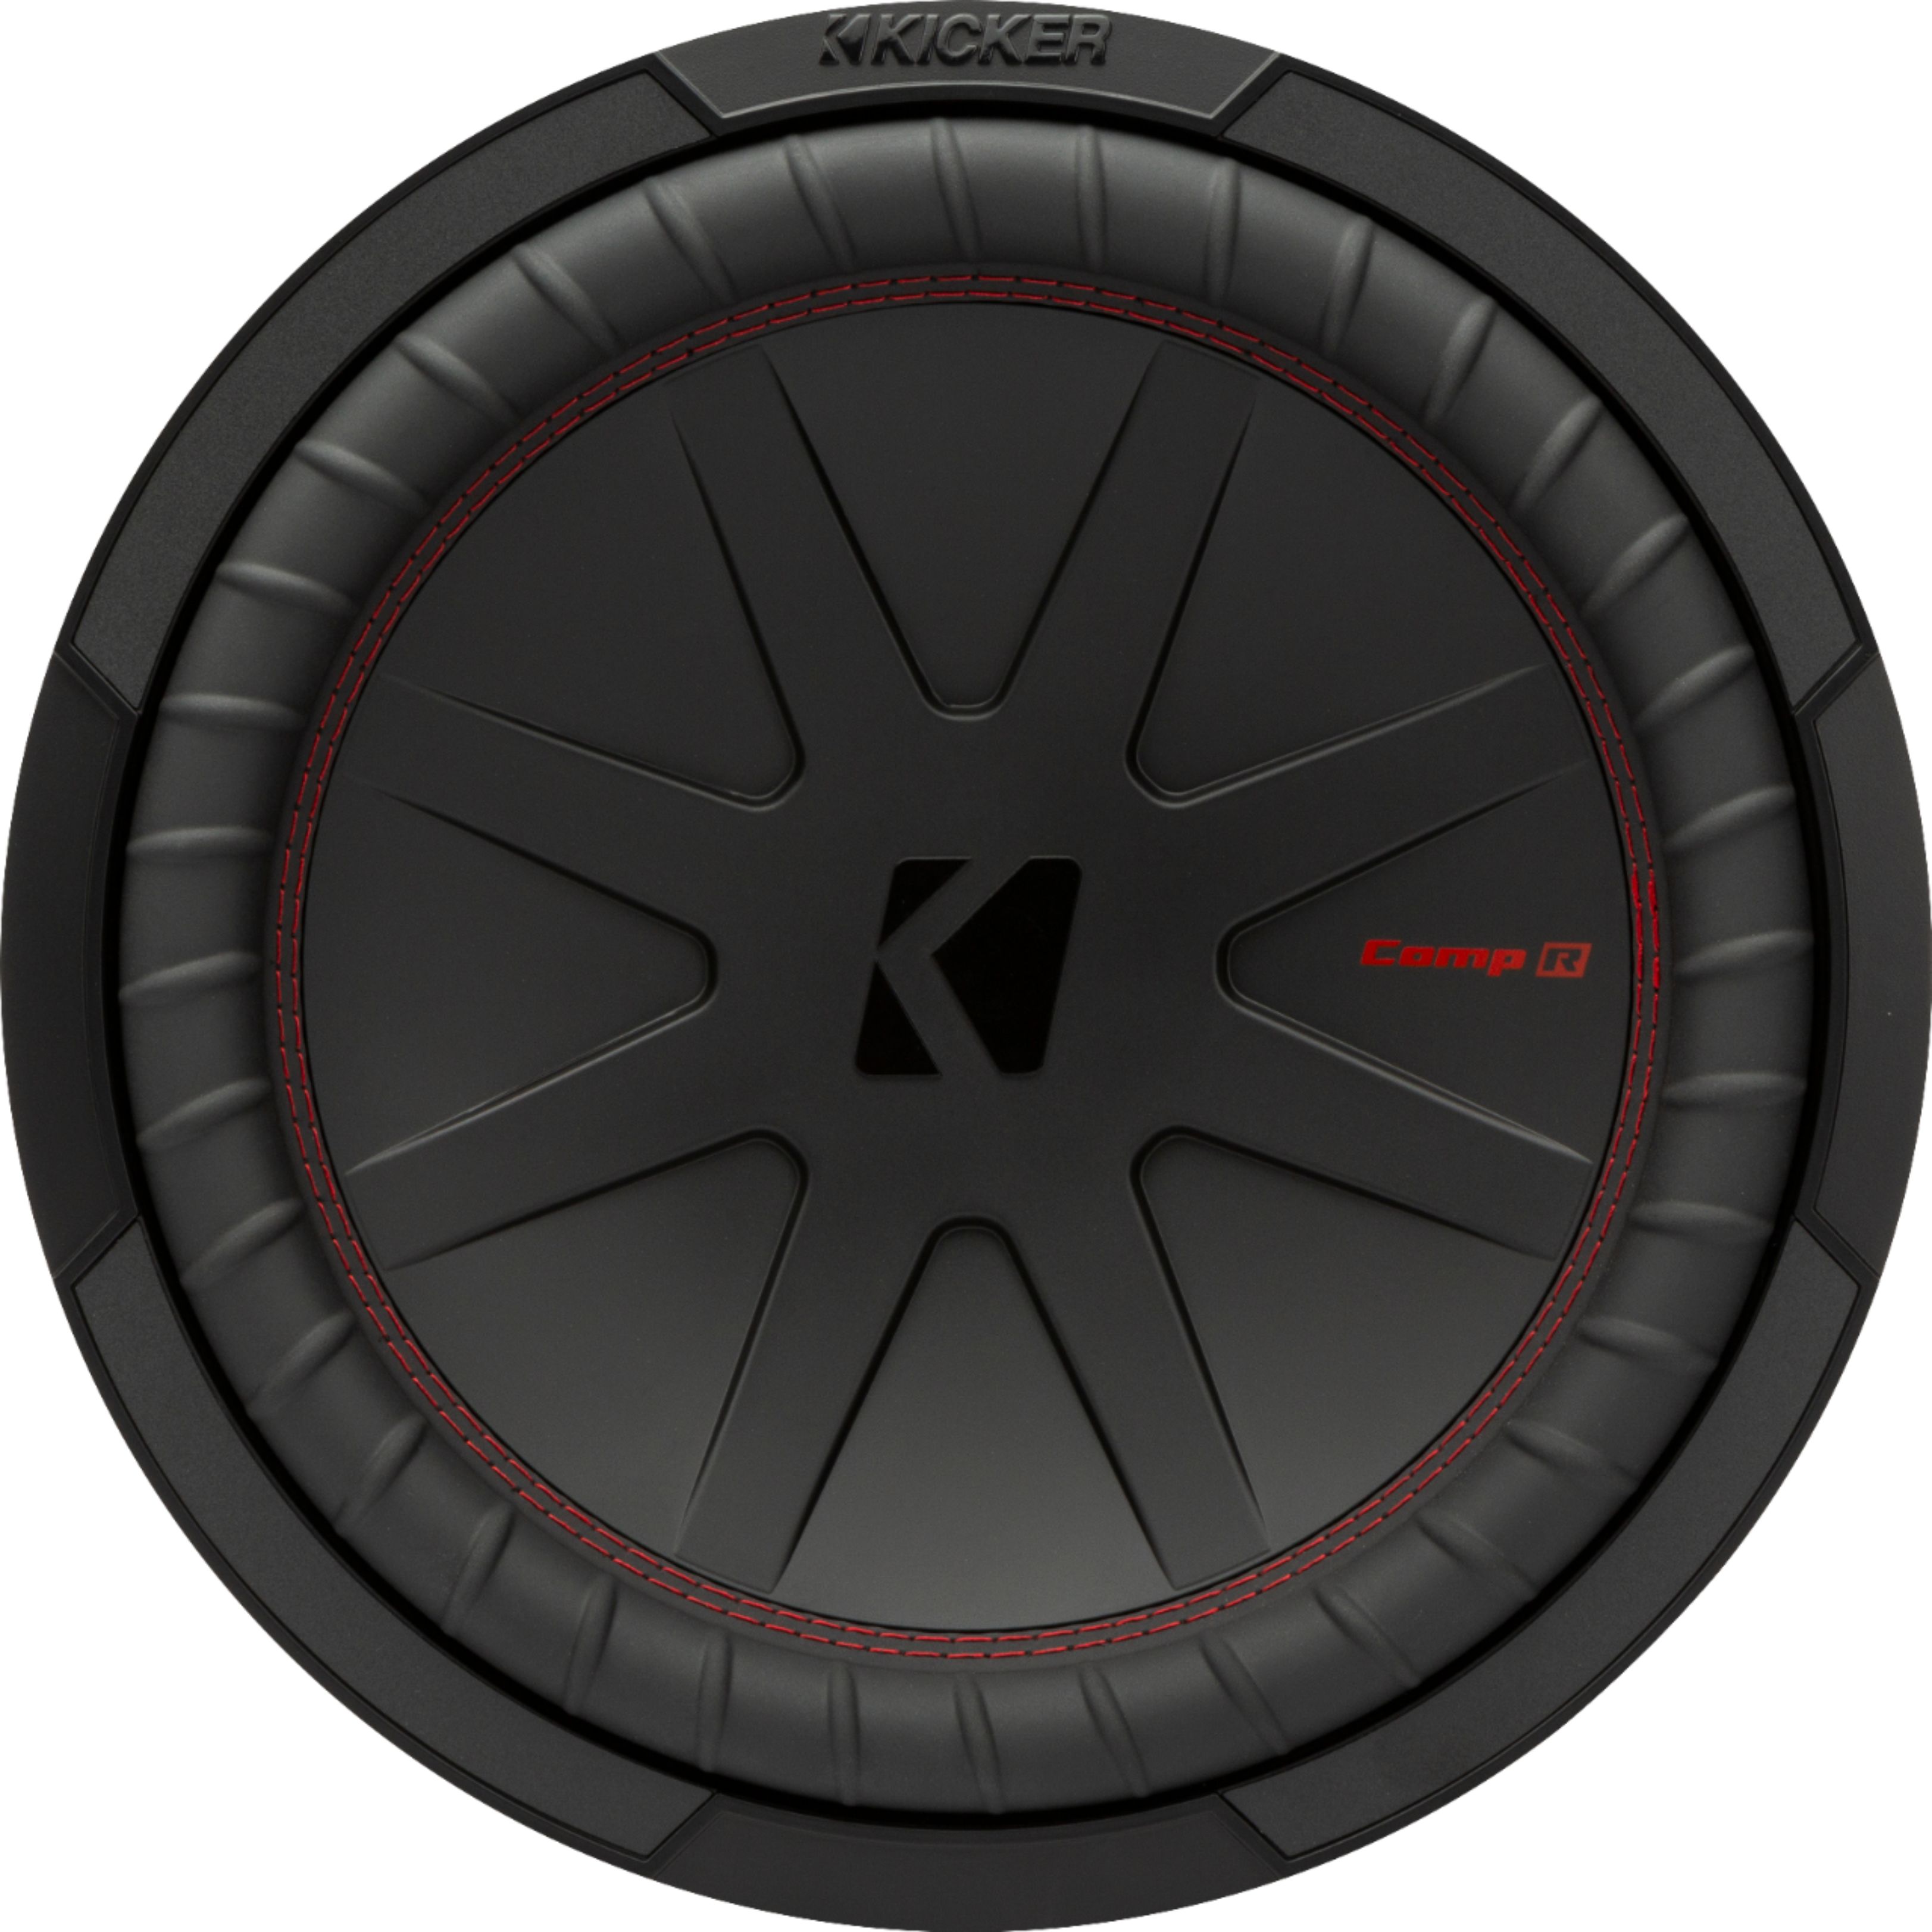 KICKER - CompR 12" Dual-Voice-Coil 2-Ohm Subwoofer - Black